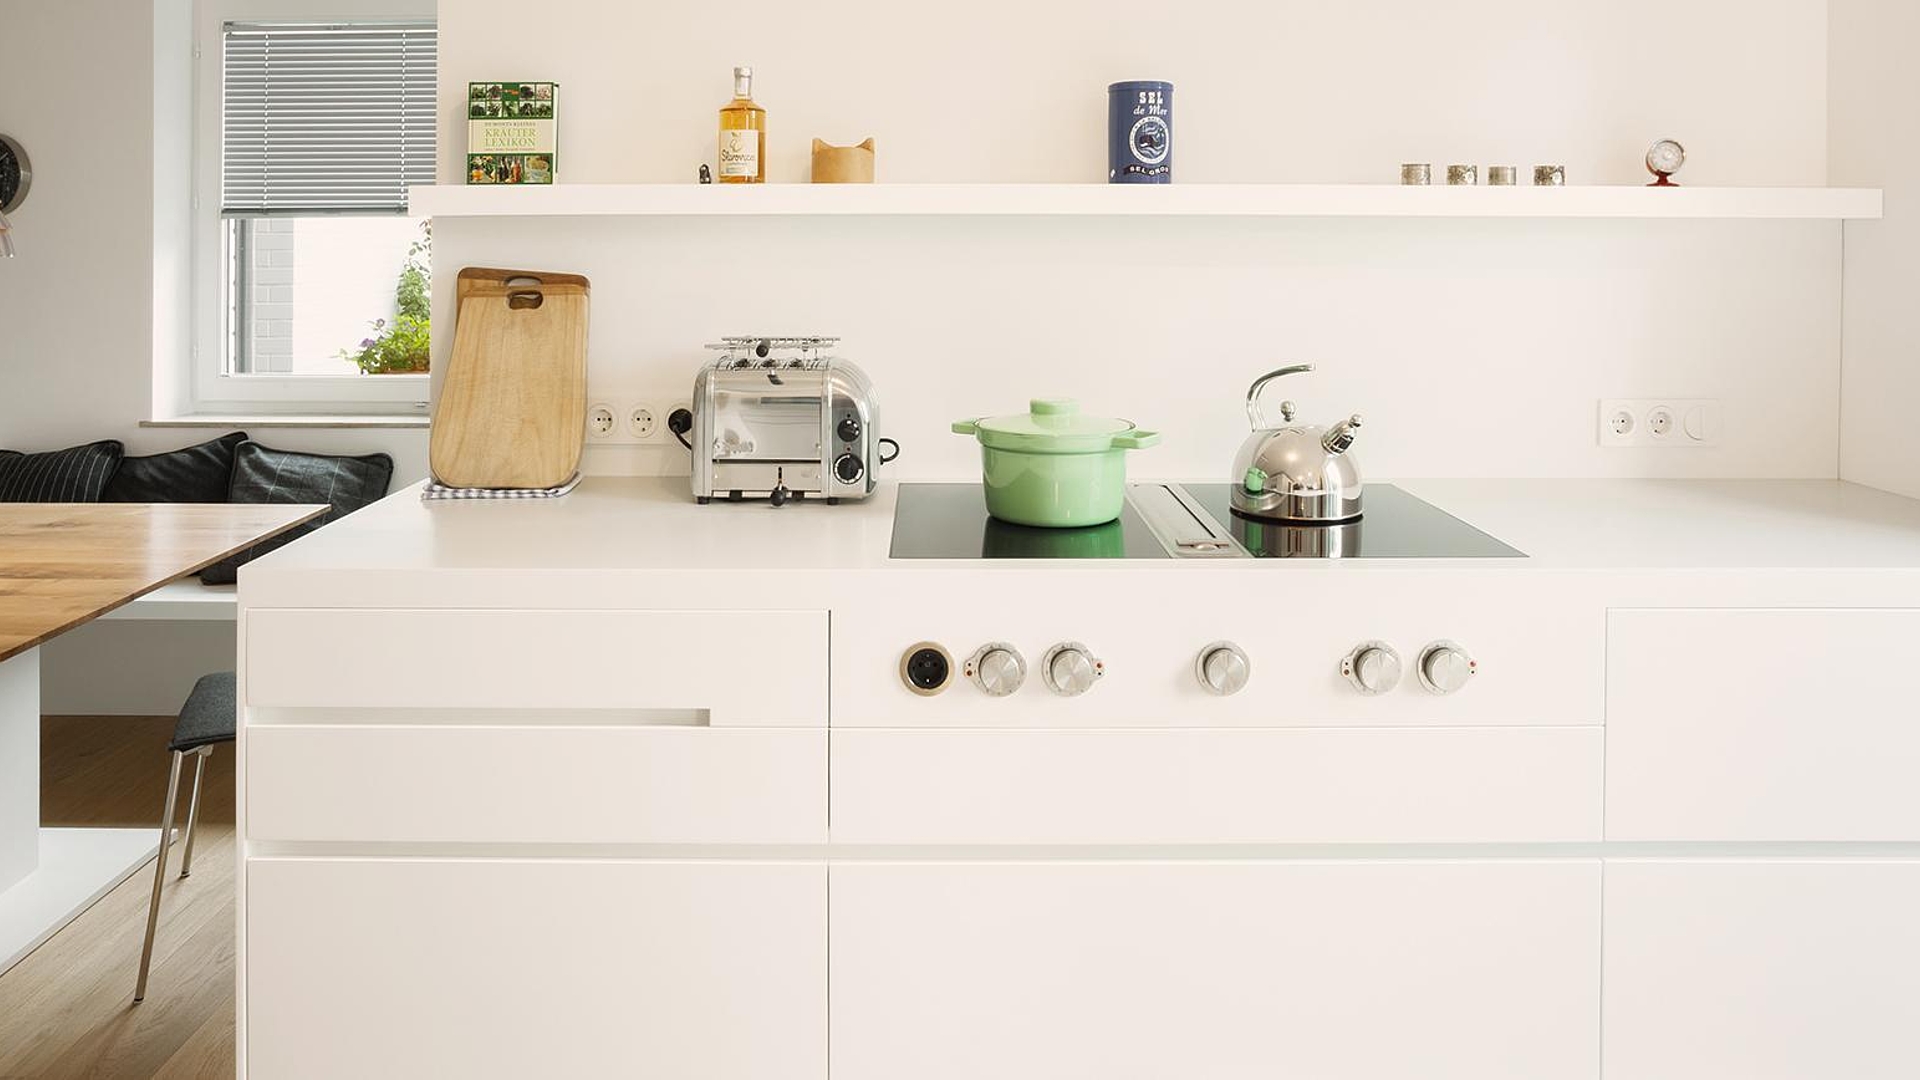 Notre service montage cuisine : la recette du succès - IKEA